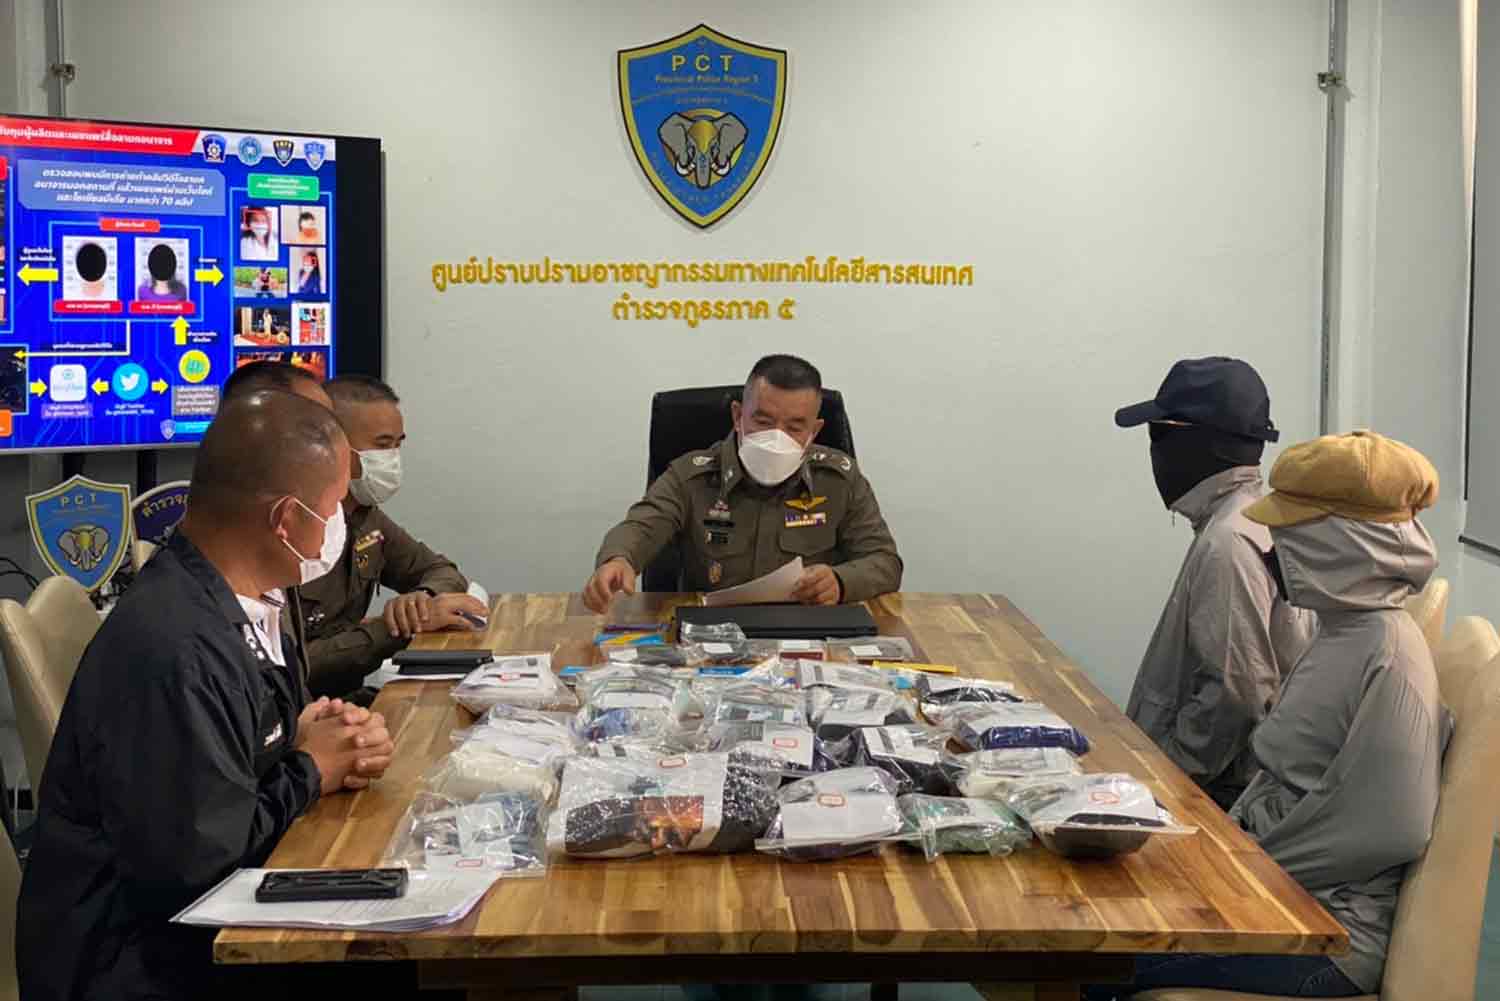 Cảnh sát Thái Lan làm việc với cặp đôi hôm 5/10 tại văn phòng cảnh sát khu vực tại tỉnh Chiang Mai, Thái Lan. Ảnh: Bangkok Post